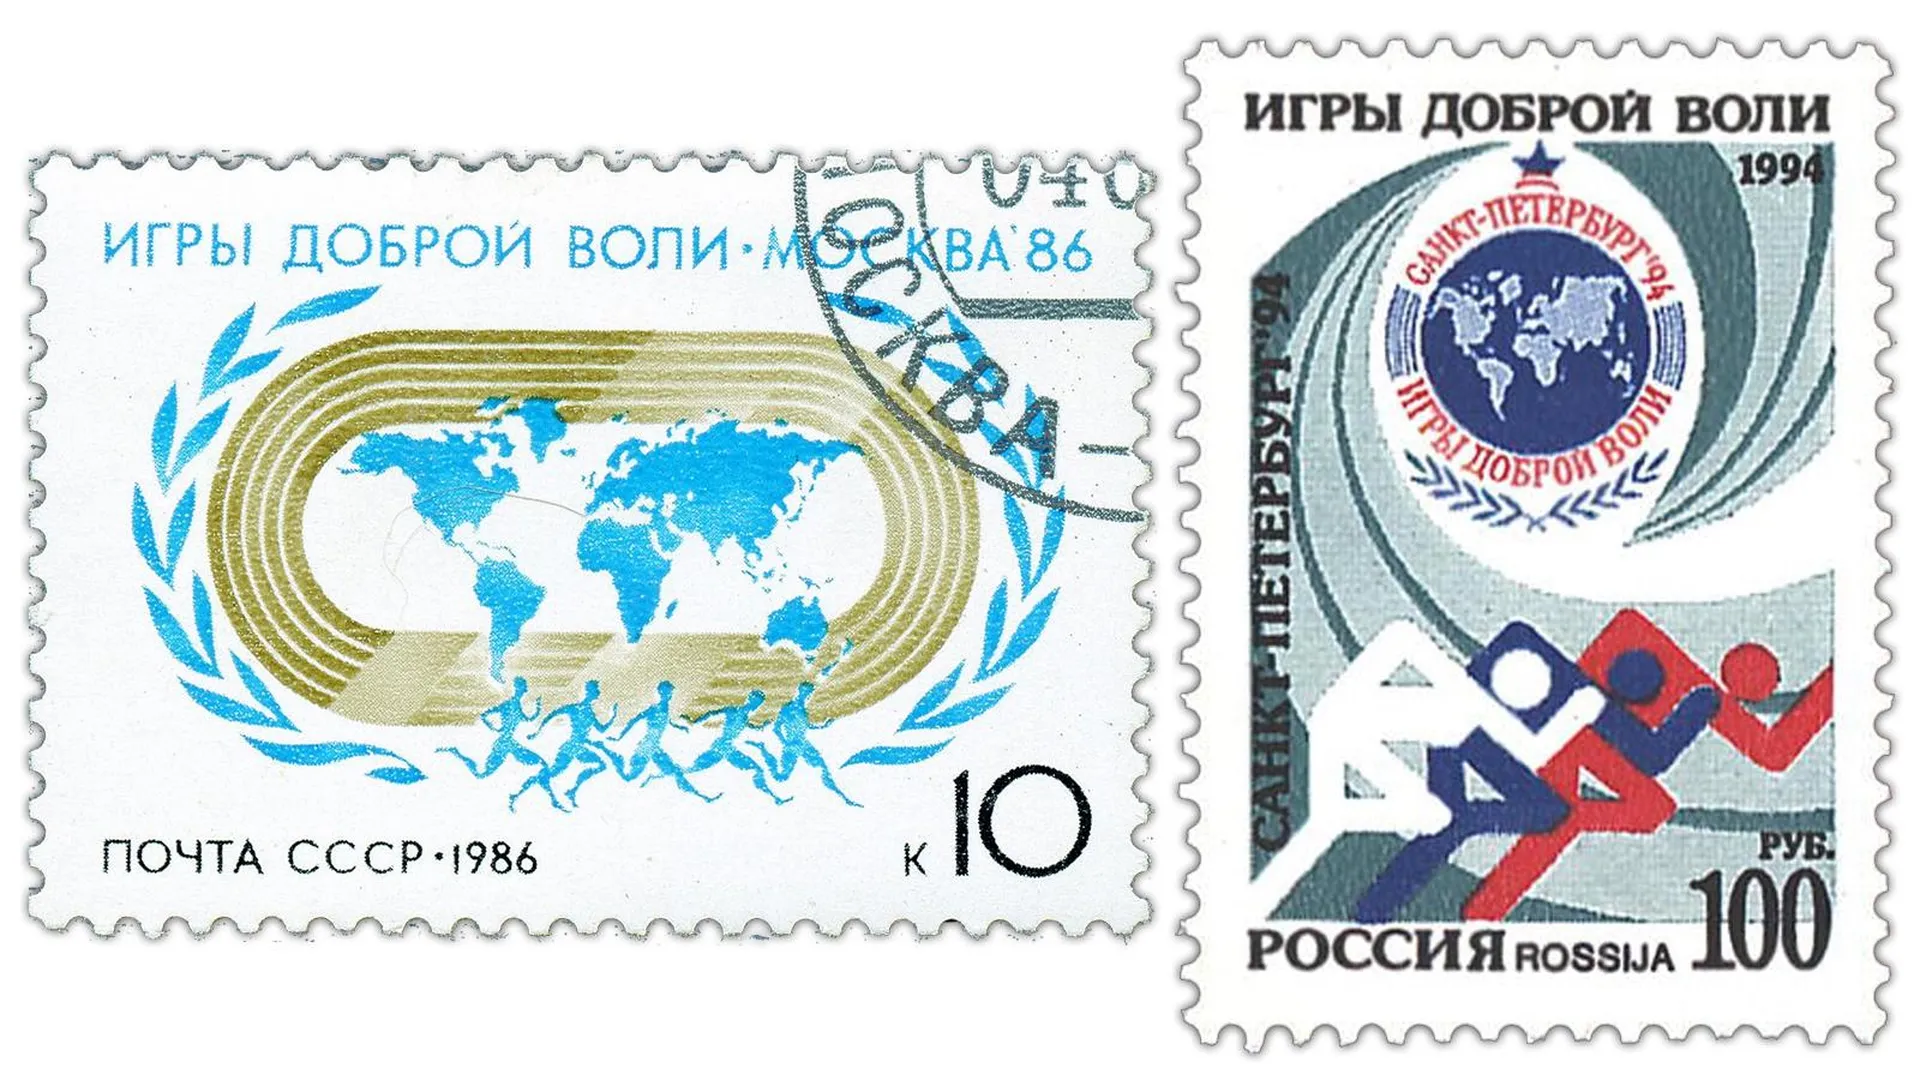 Советская и российская почтовые марки, посвященные Играм доброй воли